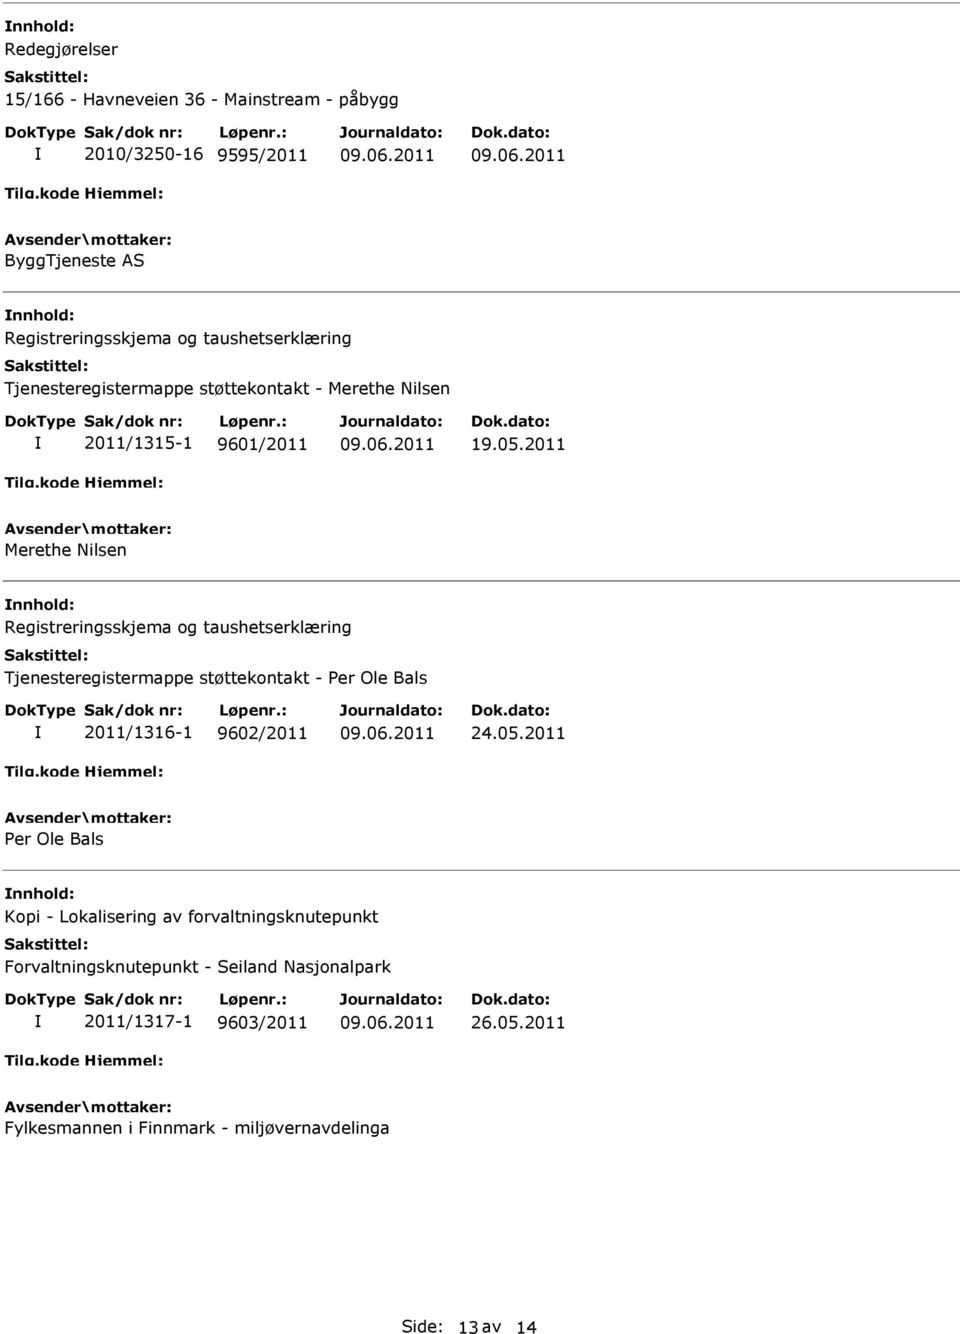 2011 Merethe Nilsen nnhold: Registreringsskjema og taushetserklæring Tjenesteregistermappe støttekontakt - Per Ole Bals 2011/1316-1 9602/2011 24.05.